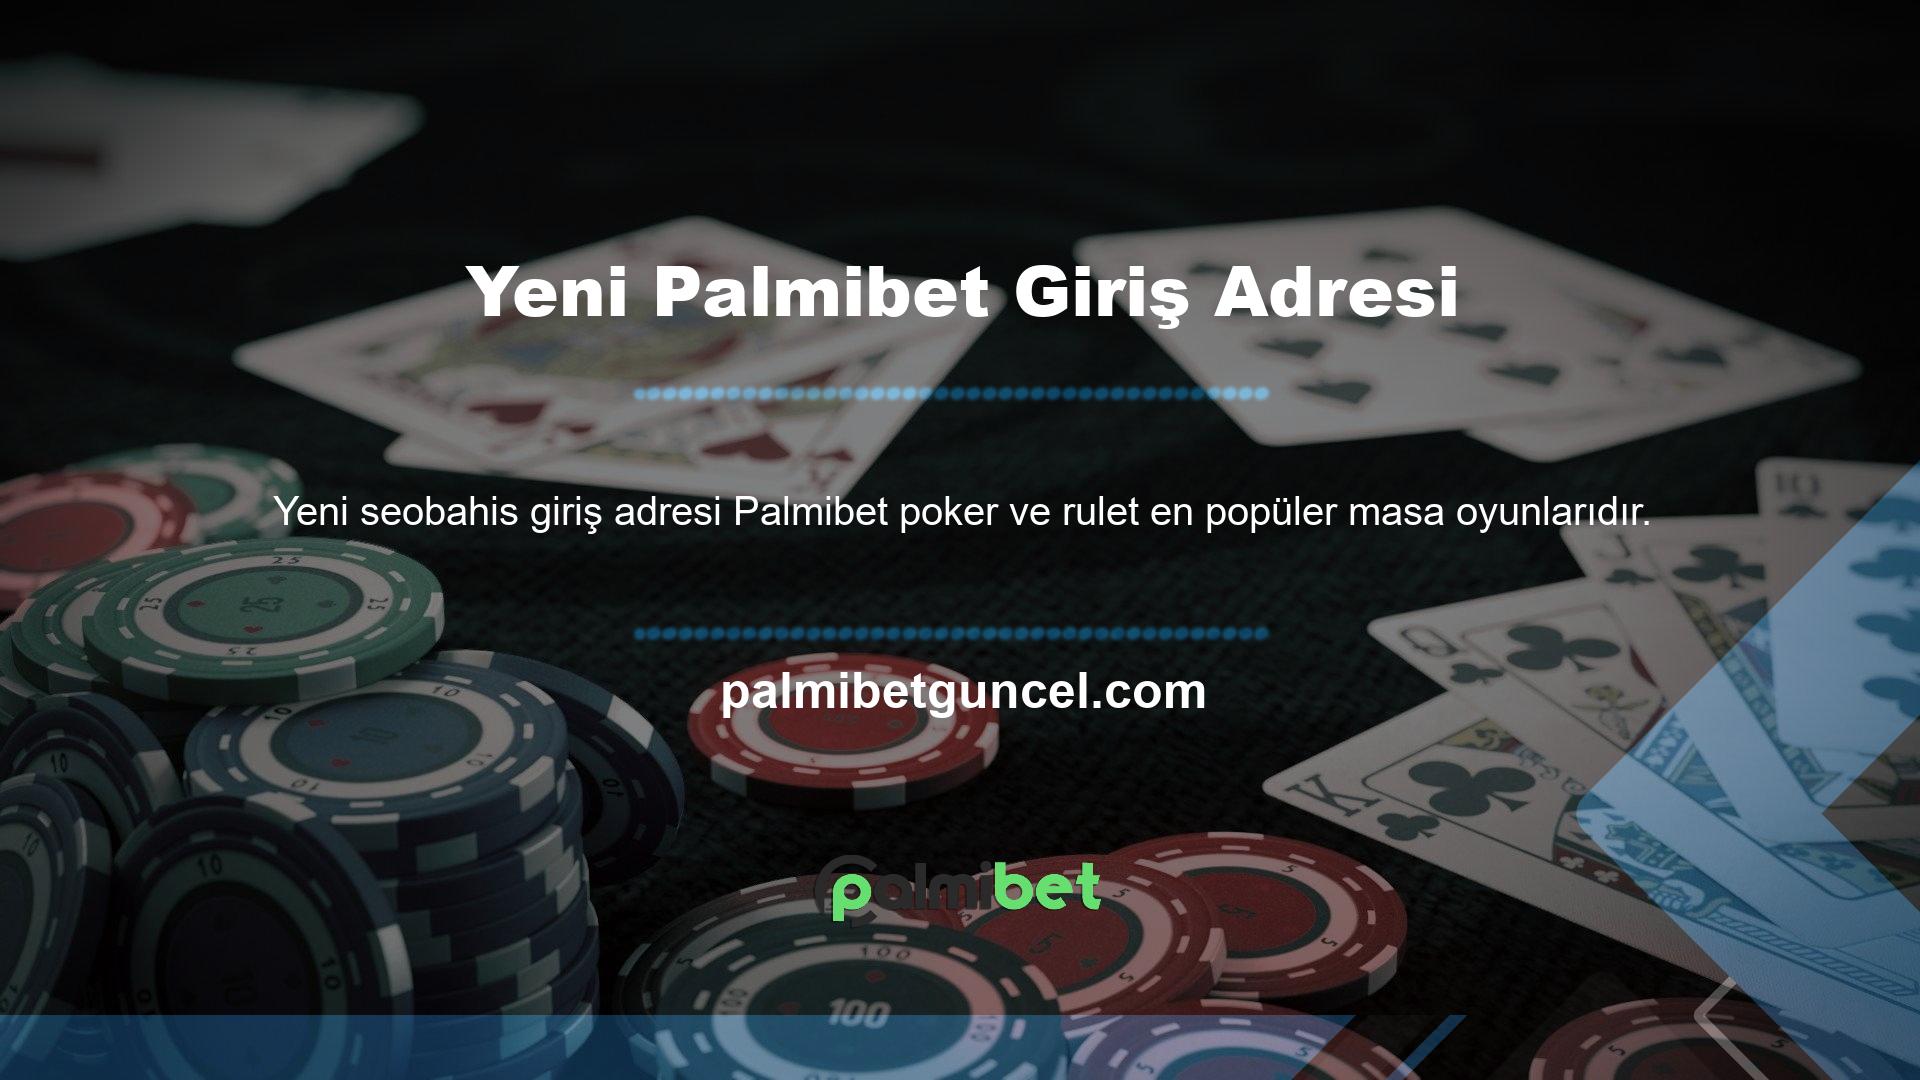 Palmibet canlı casino poker için Canlı masa oyunları sekmesine tıklamanız gerekmektedir